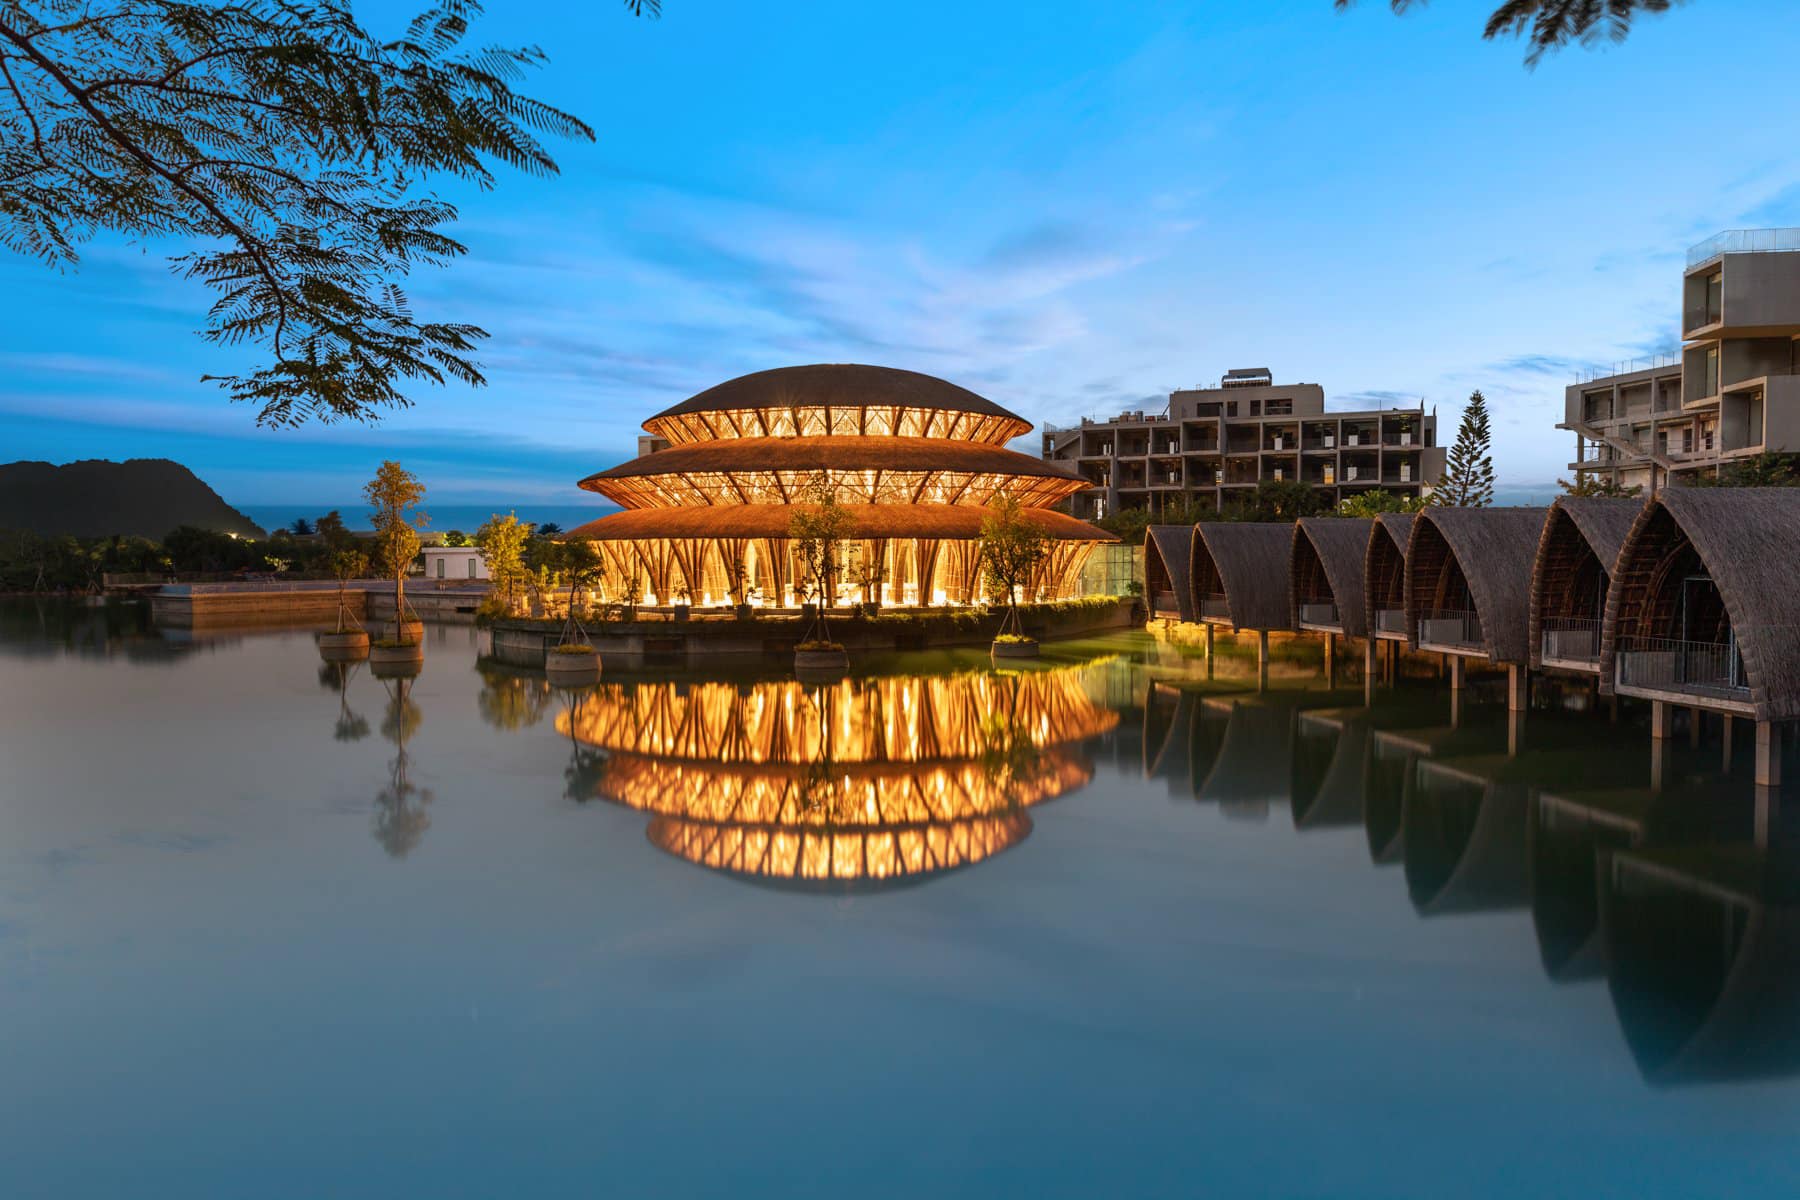 Khu resort ở Ninh Bình: Bản hòa tấu của những khúc nhạc tre, có Nhà tre lớn bậc nhất Đông Nam Á  - Ảnh 3.